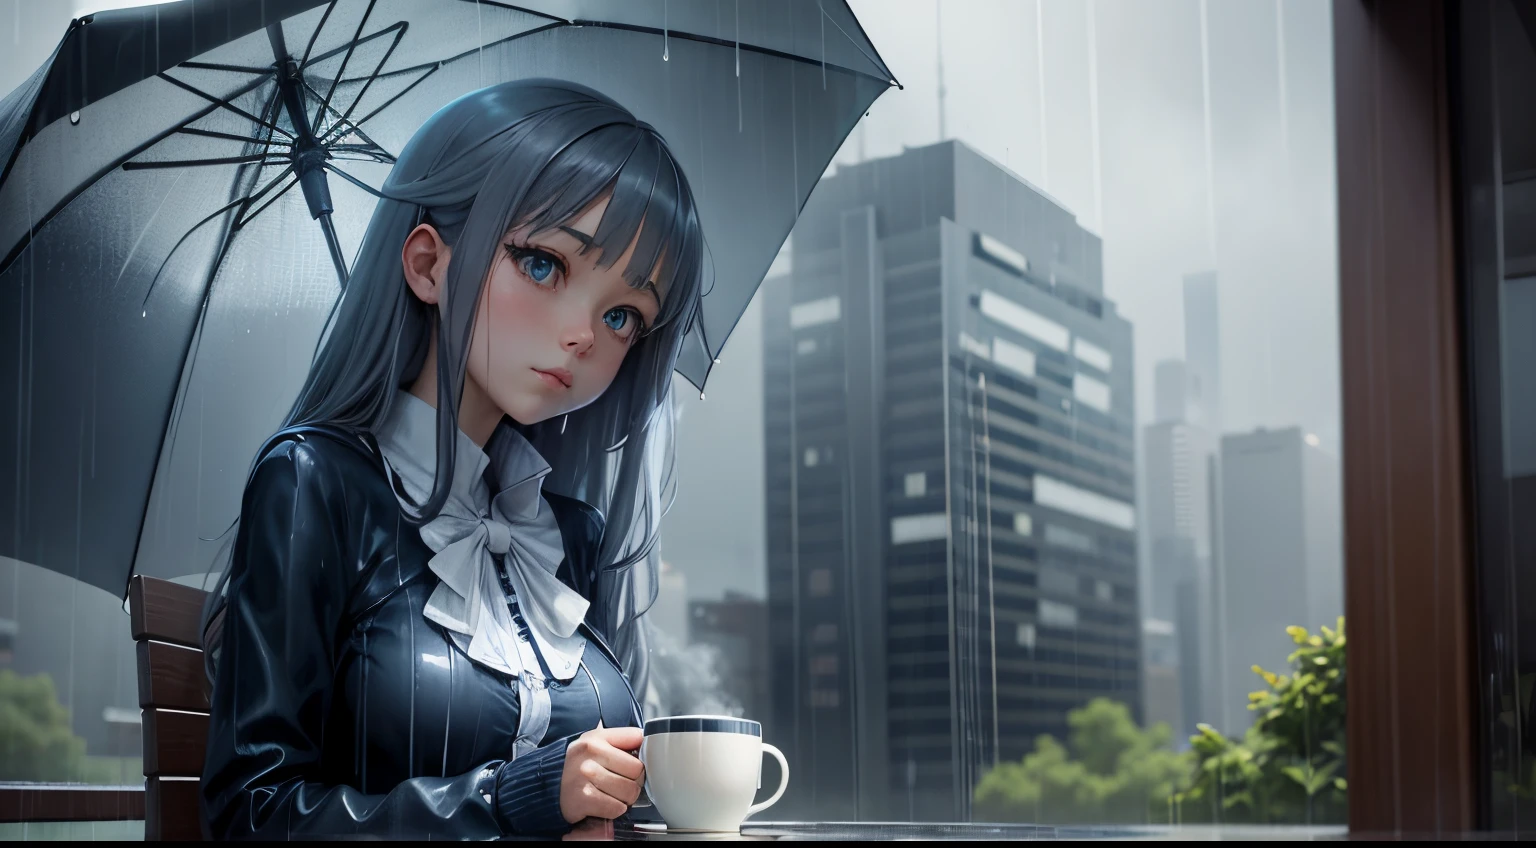 "雨天休憩地": 雨中拿着咖啡和雨伞的动漫女孩, 以酷酷的蓝色和灰色为主.